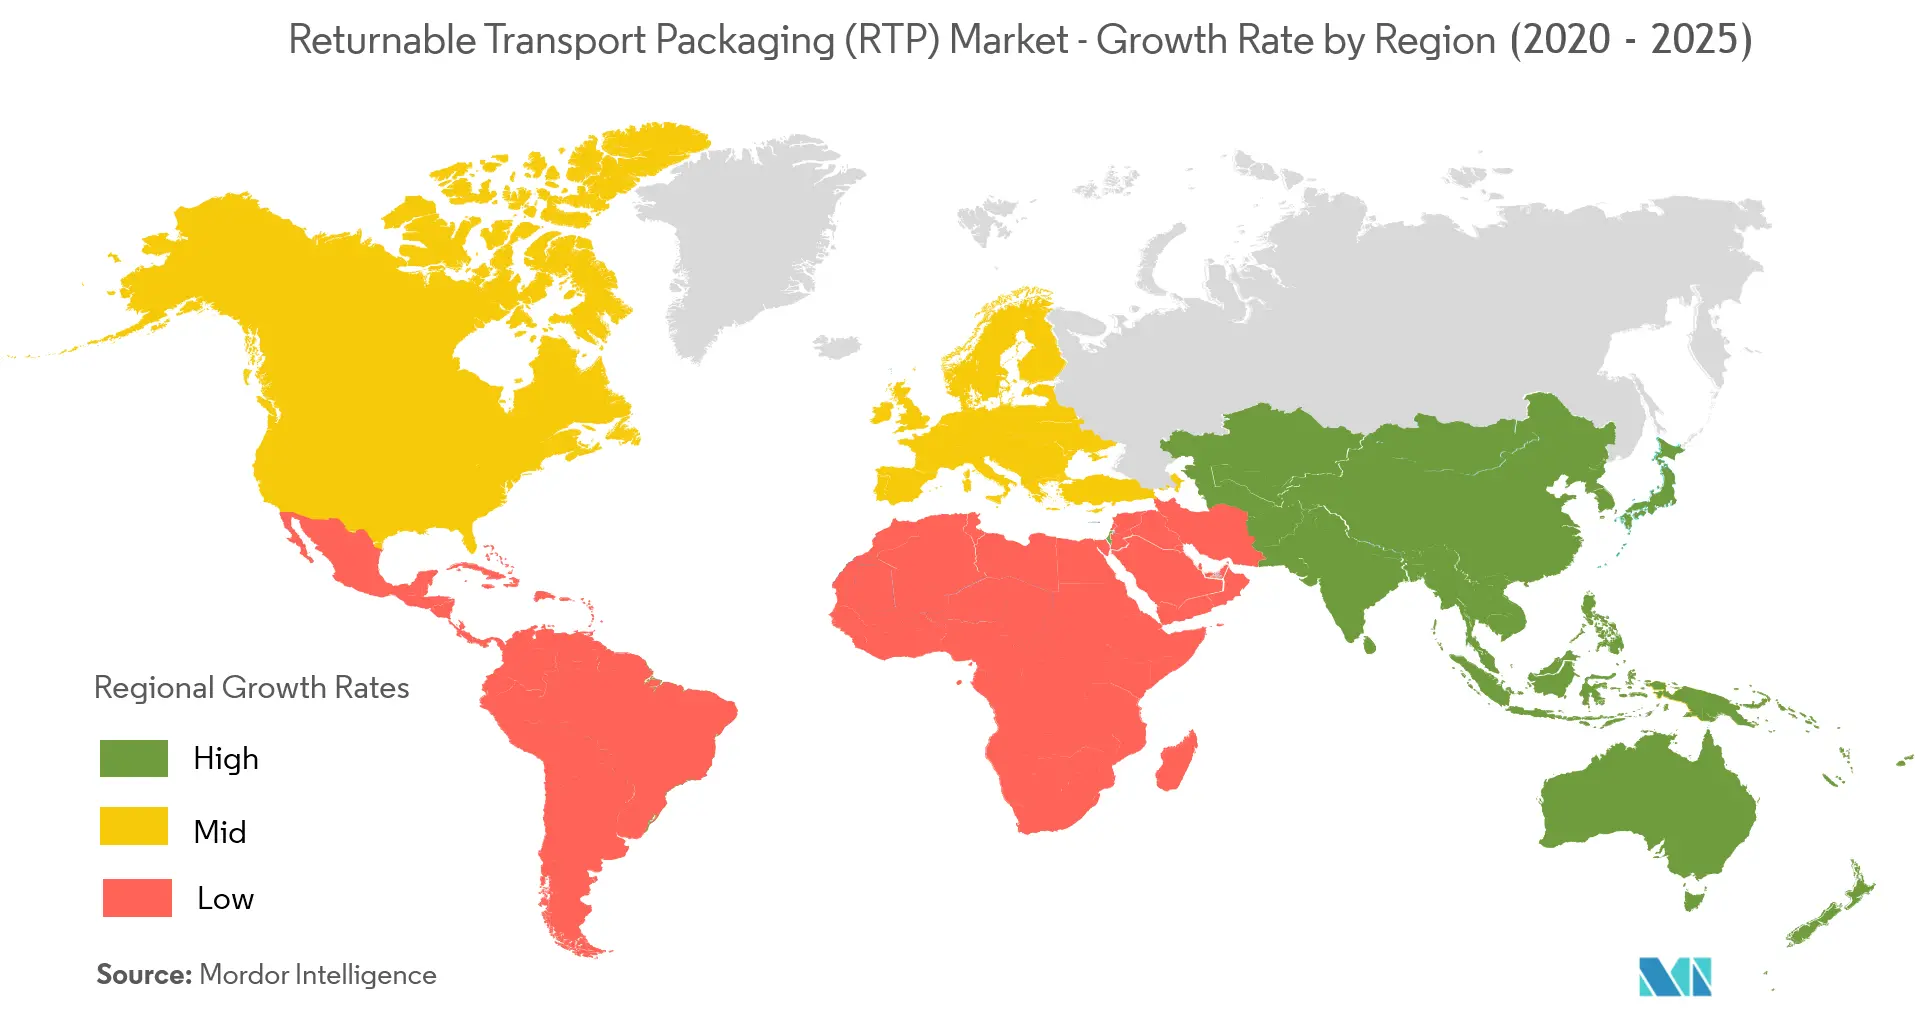 Thị trường bao bì vận chuyển có thể trả lại (RTP) - Tốc độ tăng trưởng theo khu vực (2020 - 2025)